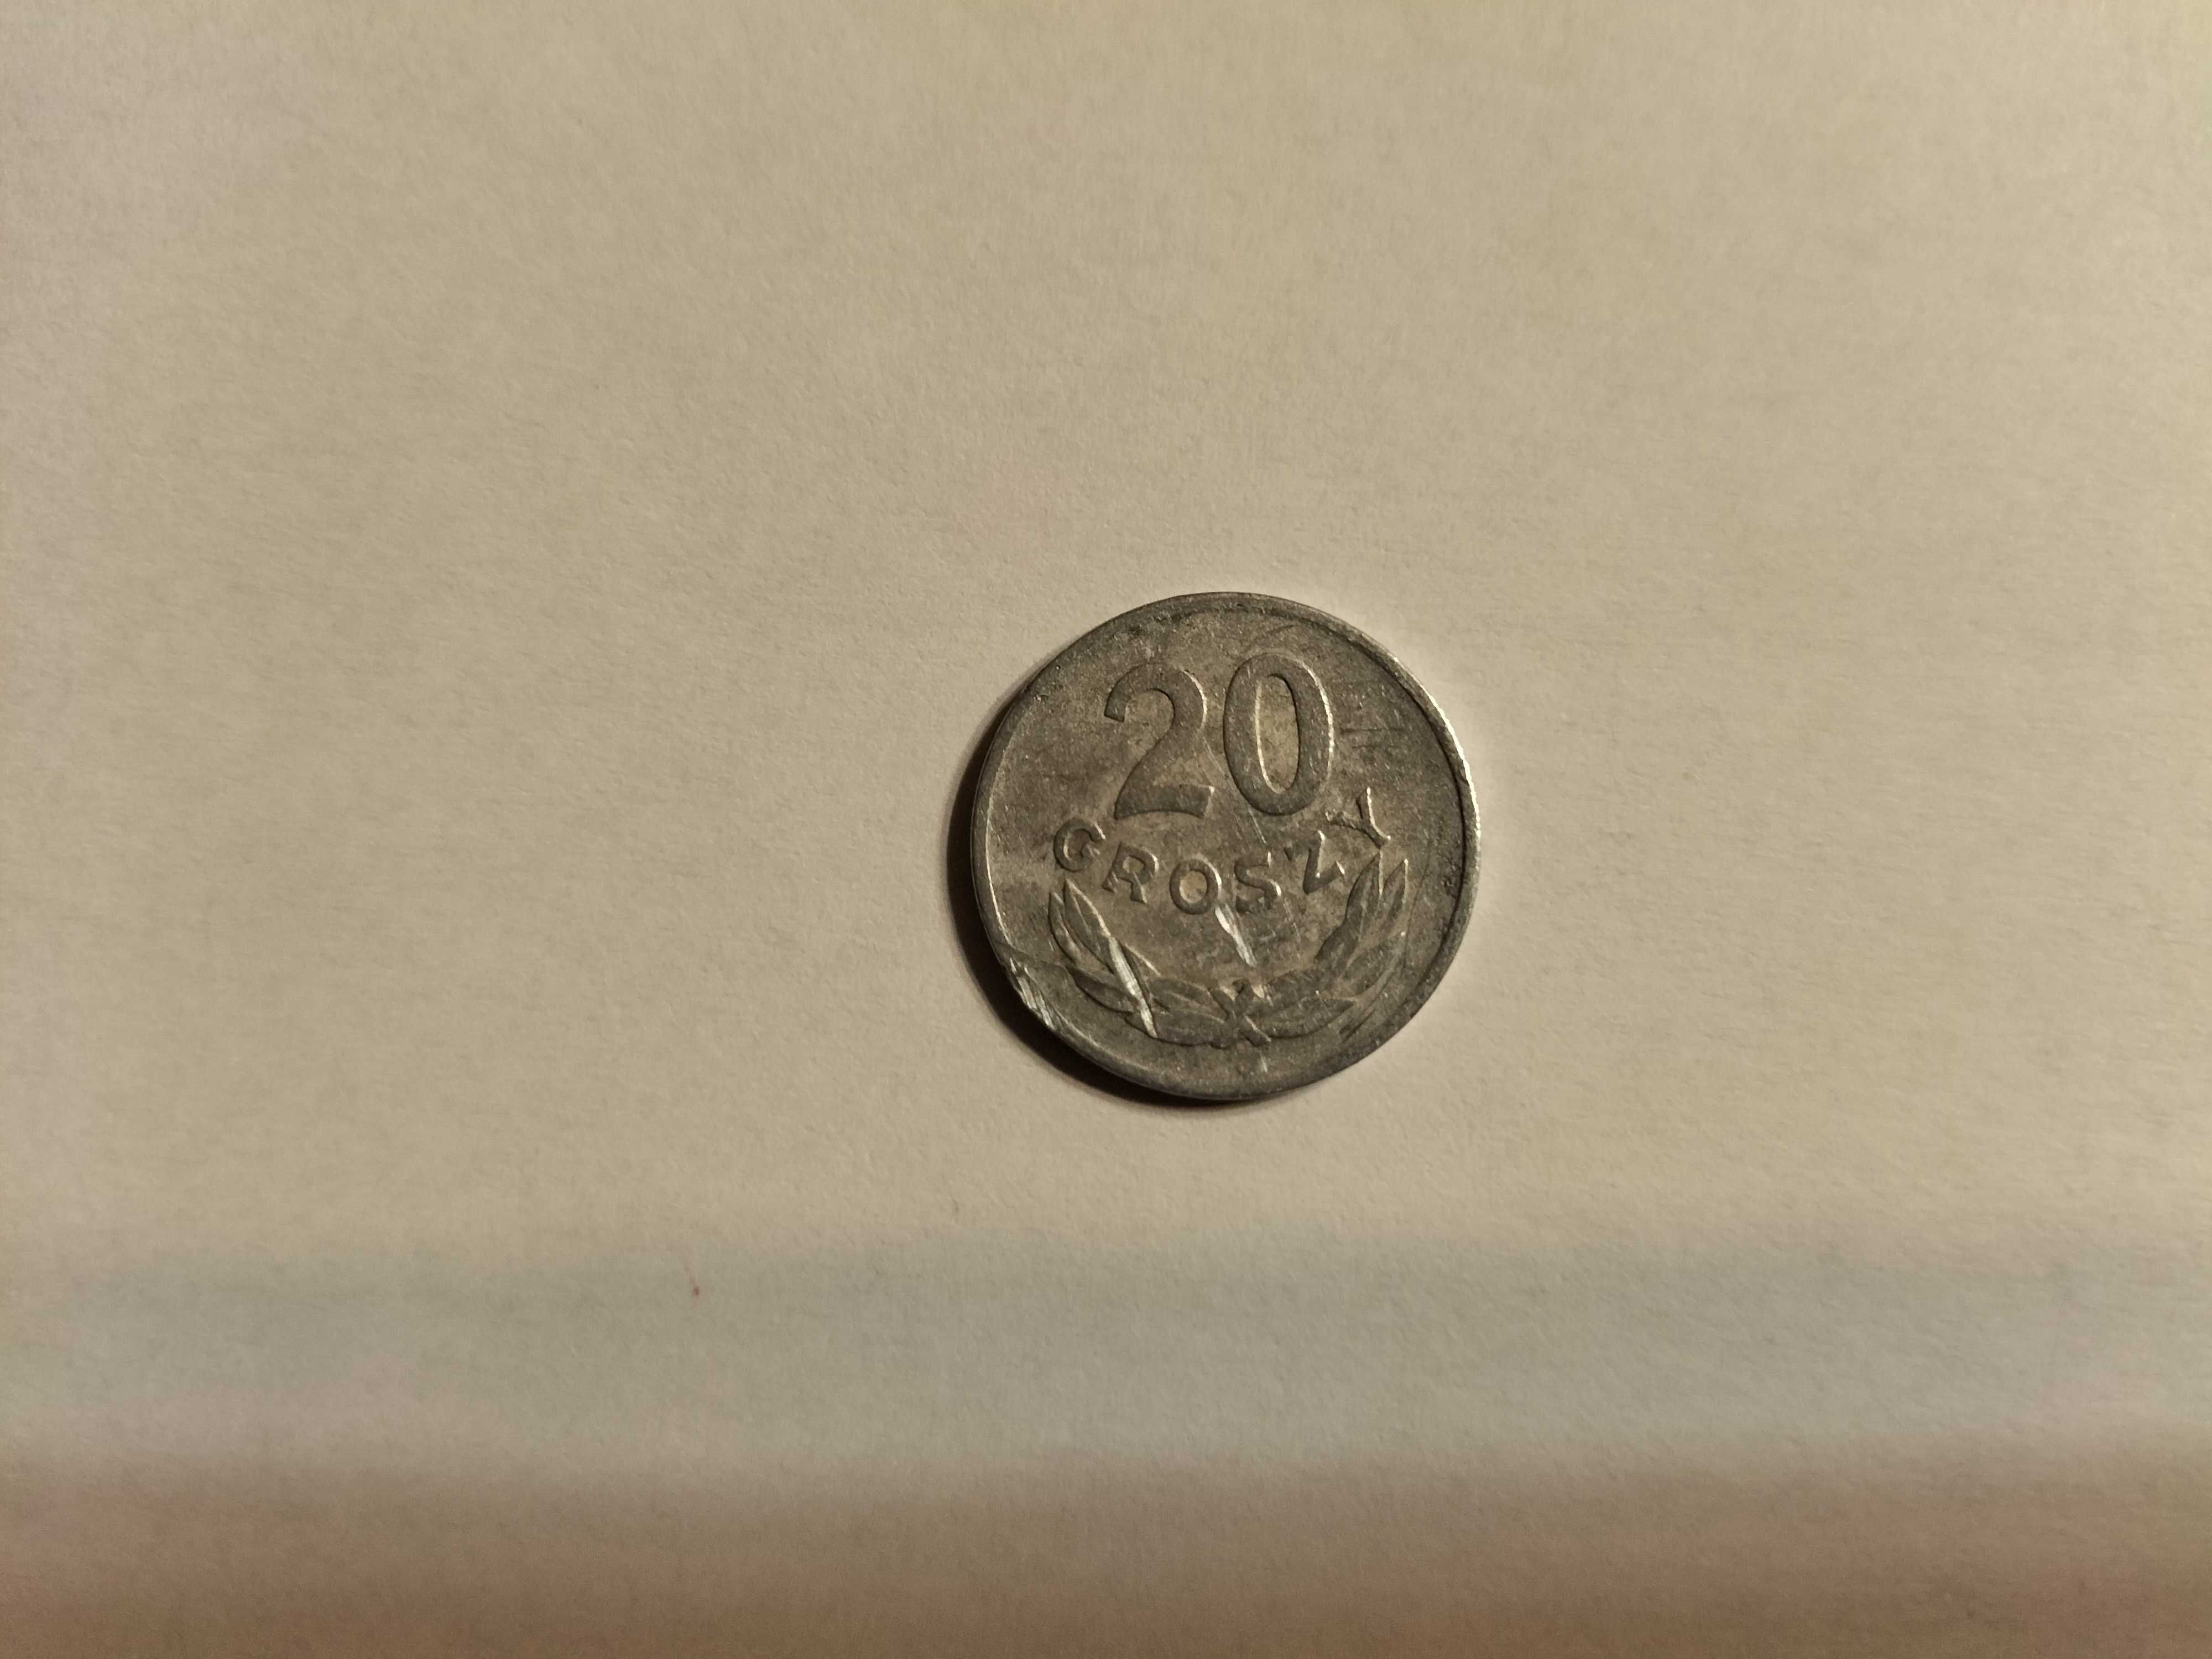 8 monet, 20 groszy, jedna 1949 bez znaku menniczego